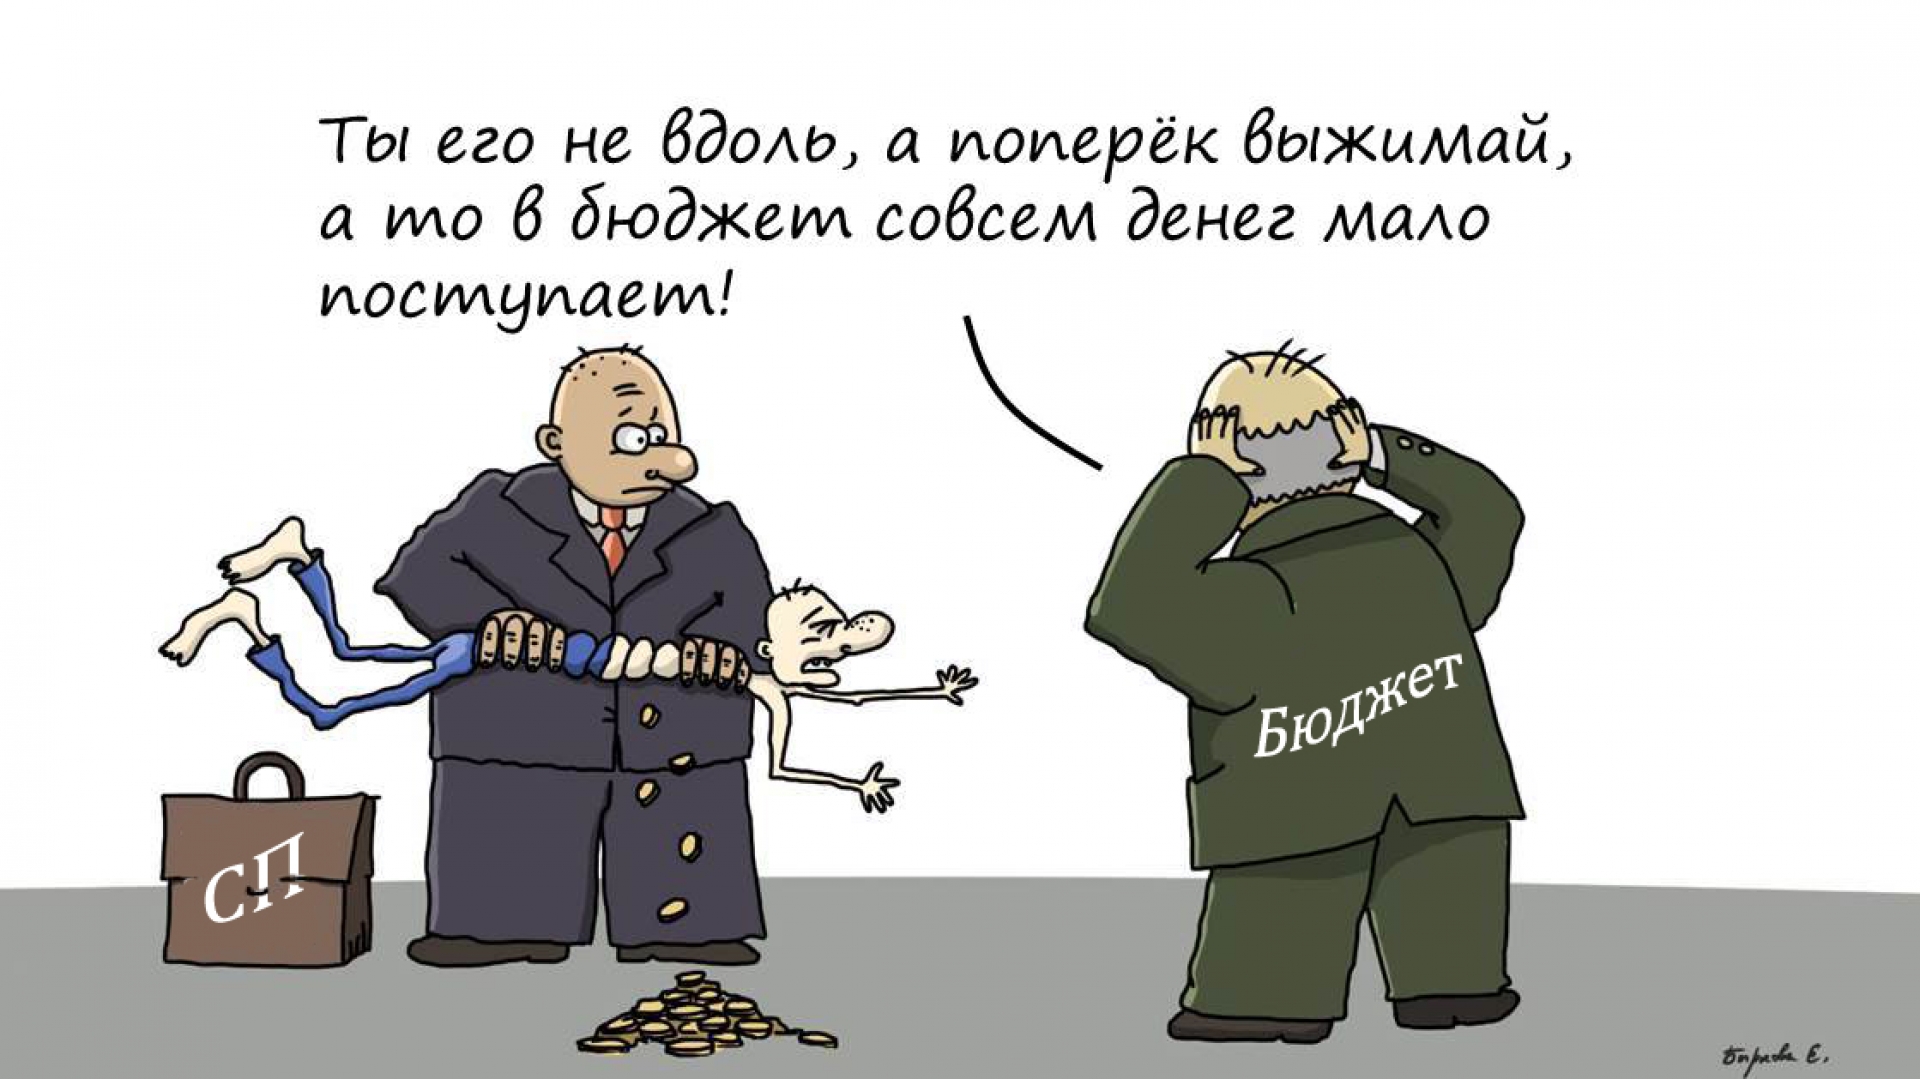 Пришли большие налоги. Налоги карикатура. Карикатуры про малый бизнес. Бизнес в России карикатура. Налоги прикол.